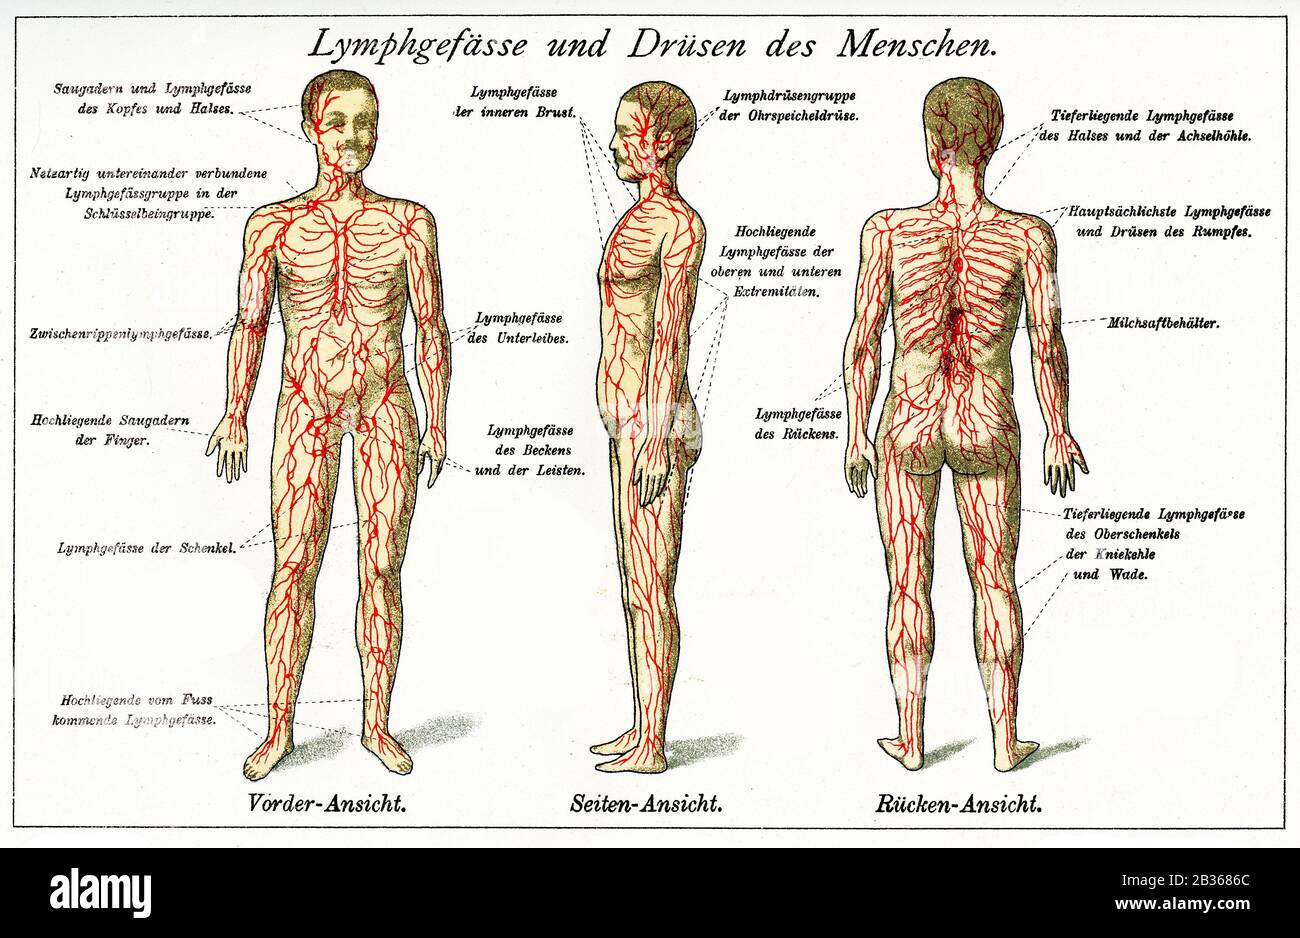 Salud y medicina: Tabla de colores de vasos linfáticos y glándulas endocrinas con descripciones alemanas Foto de stock